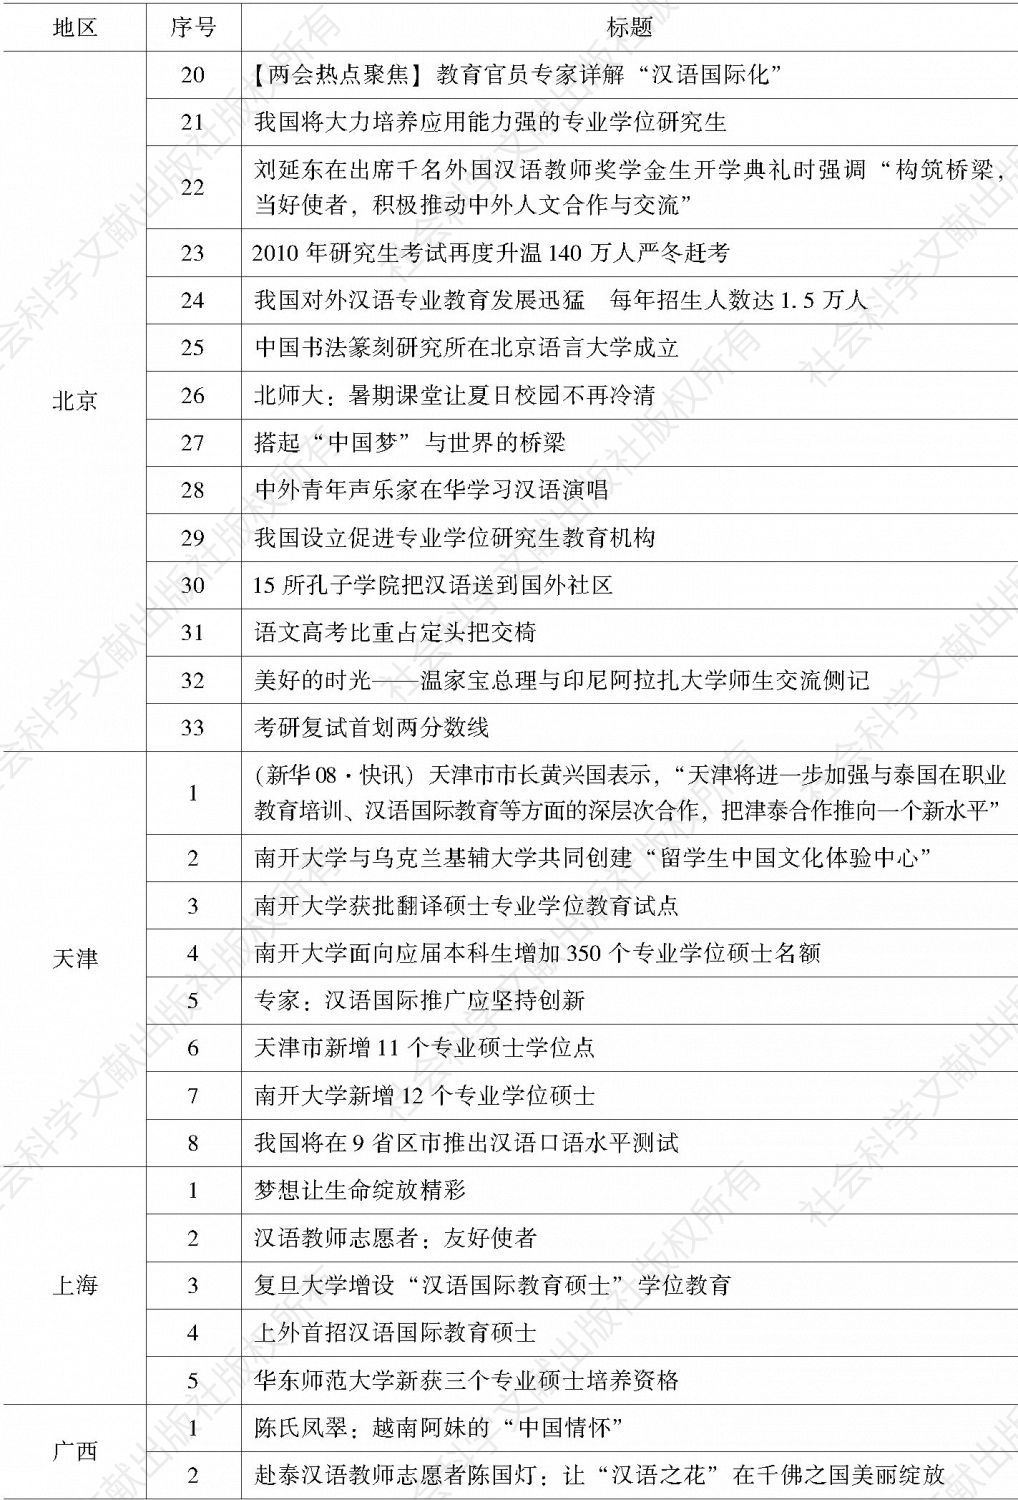 表1 各地区发布的与汉语国际教育有关的文字新闻-续表1